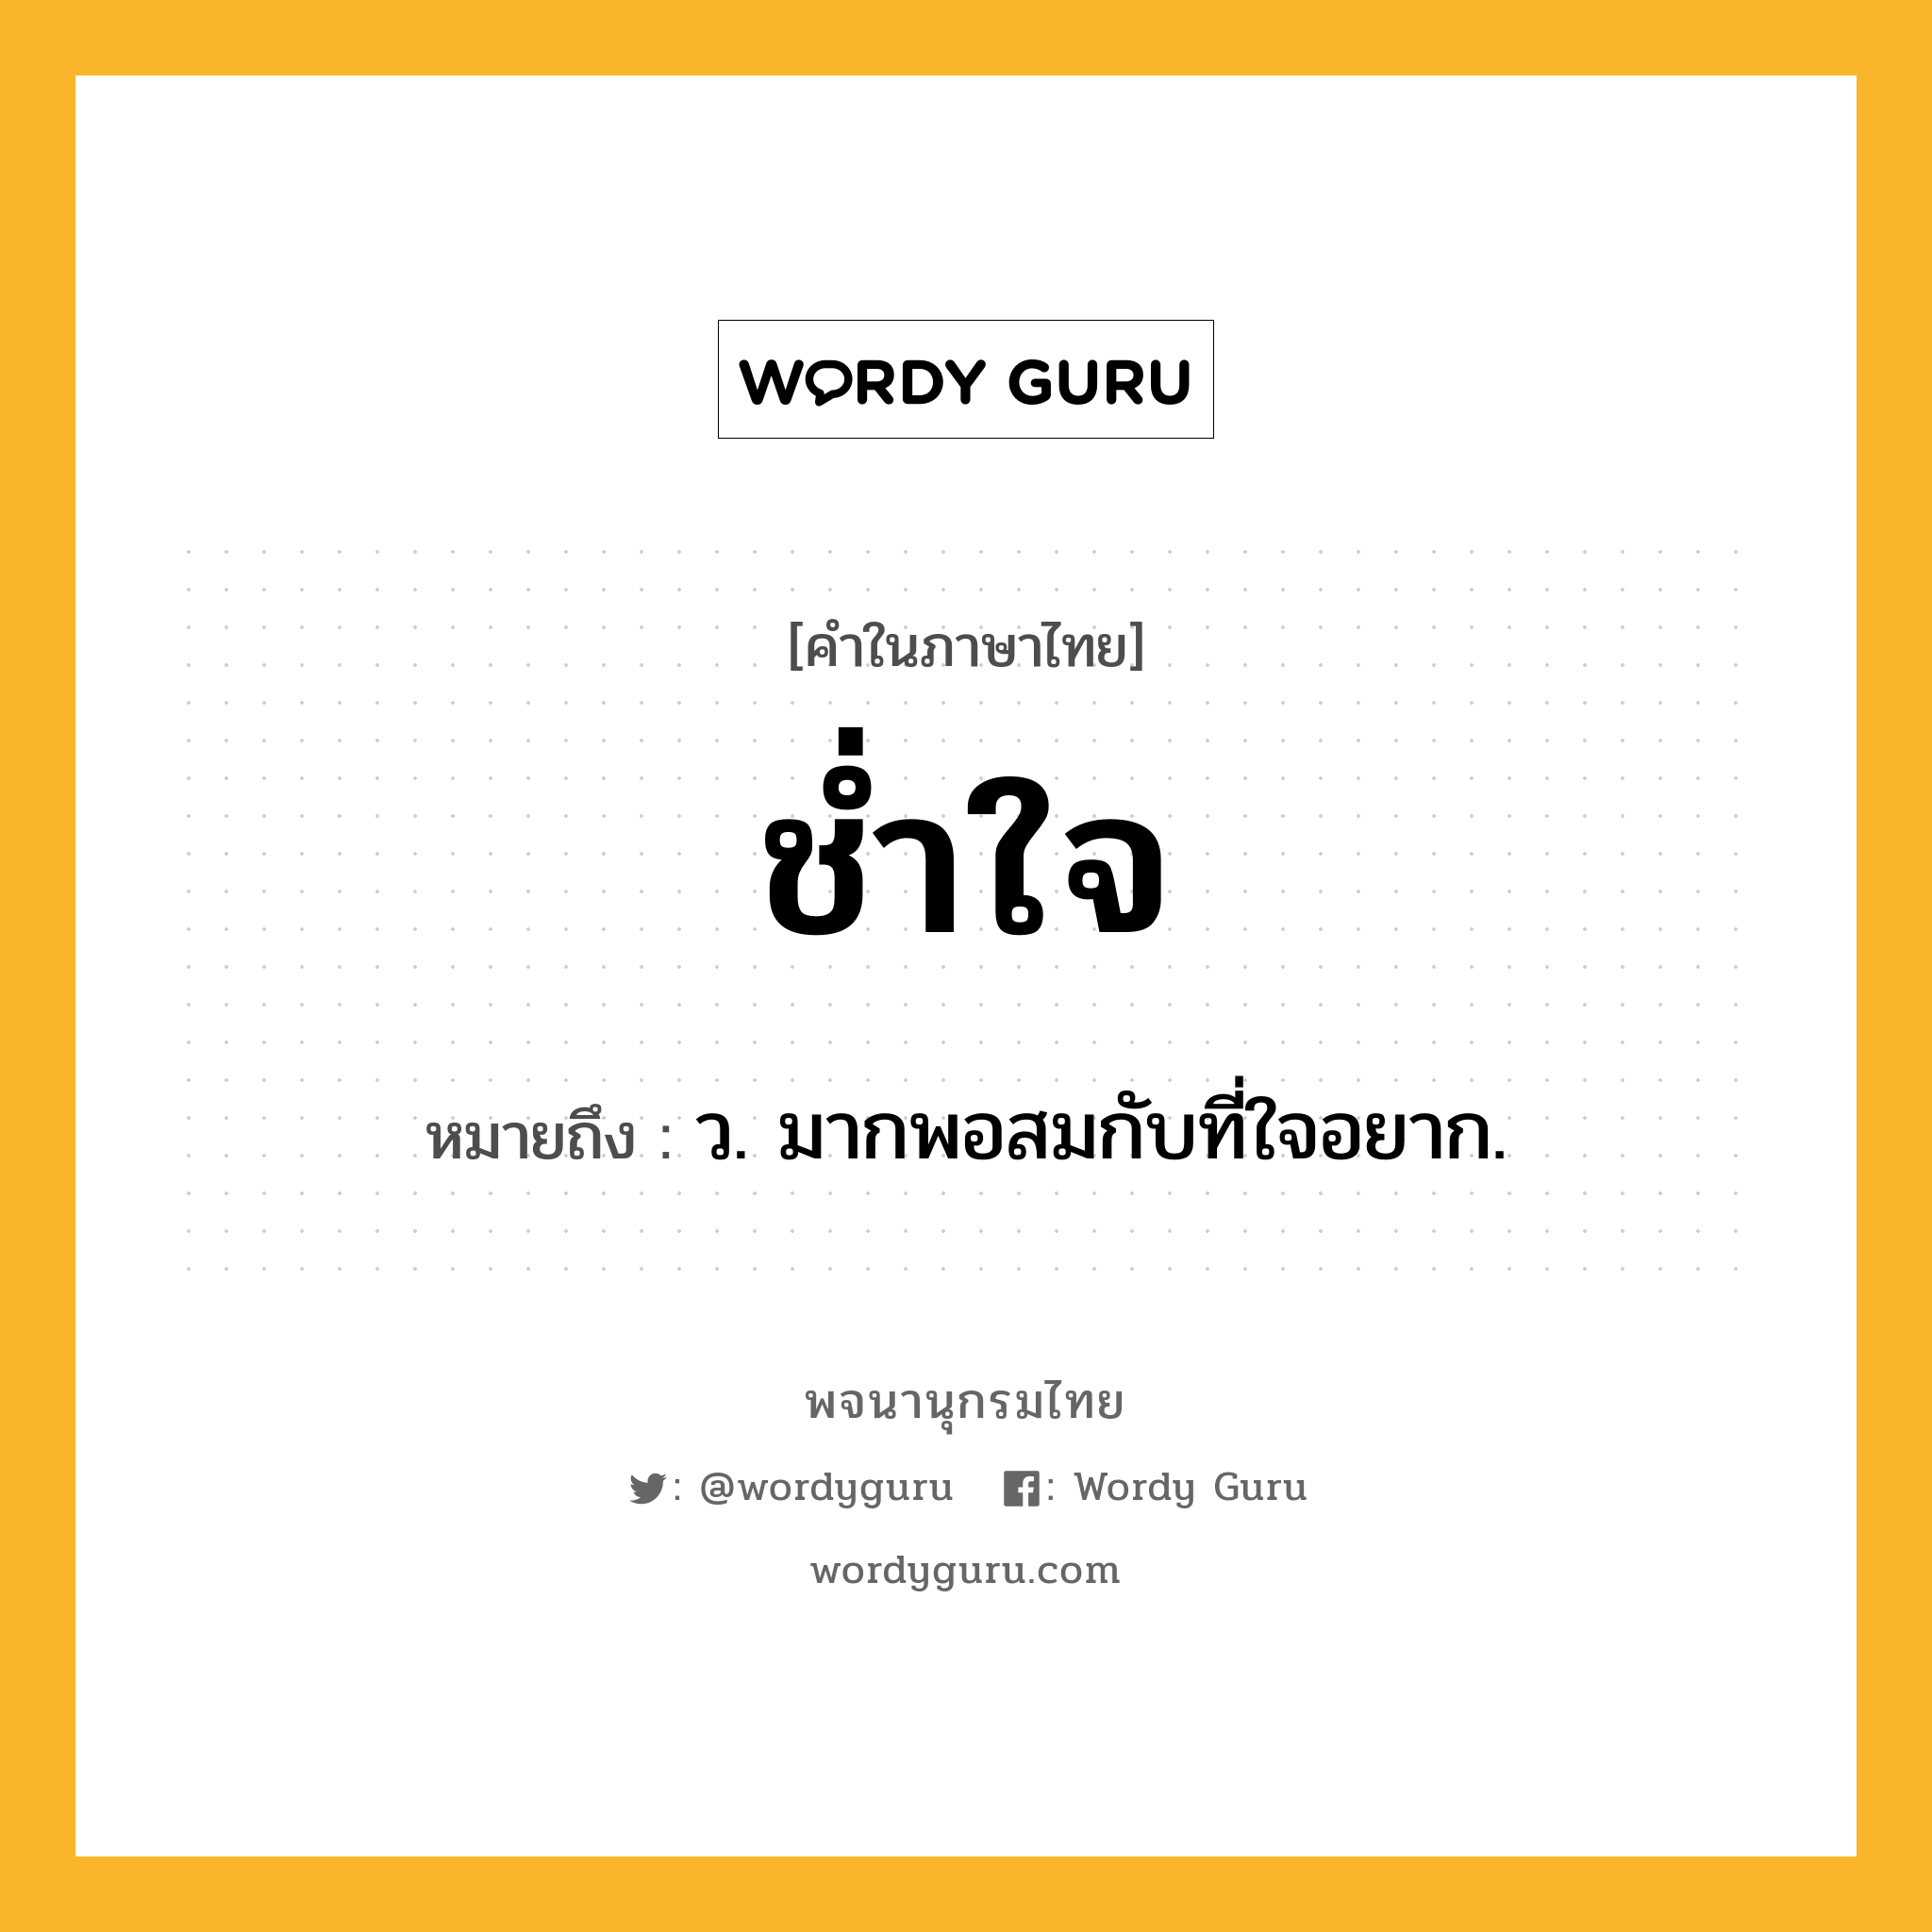 ช่ำใจ หมายถึงอะไร?, คำในภาษาไทย ช่ำใจ หมายถึง ว. มากพอสมกับที่ใจอยาก.